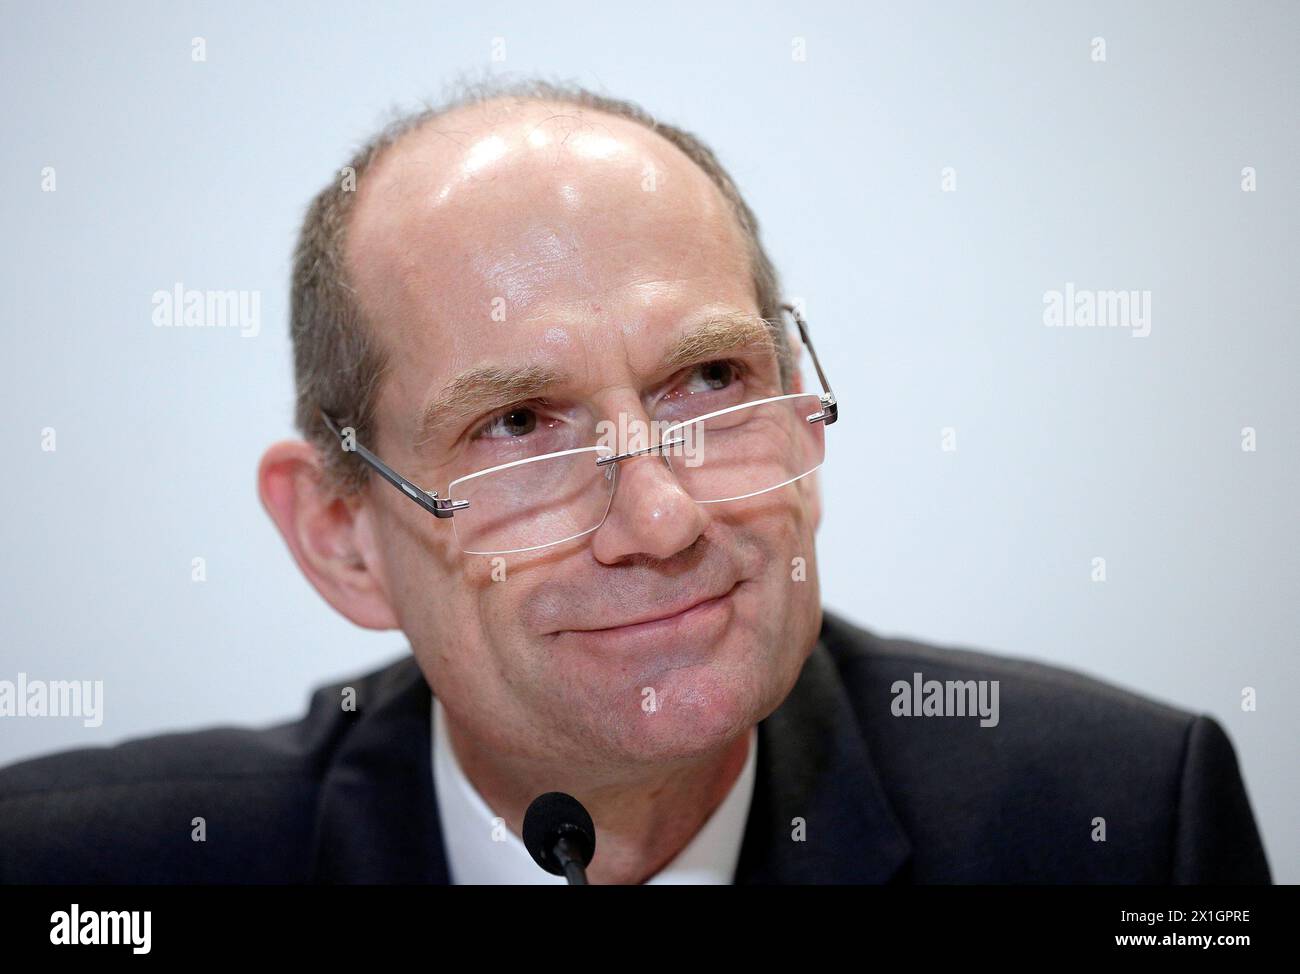 Le président désigné de la Hypo Alpe Adria Bank Martin Czurda lors d'une conférence de presse à Vienne le 19 décembre 2013. - 20131219 PD1279 - Rechteinfo : droits gérés (RM) Banque D'Images